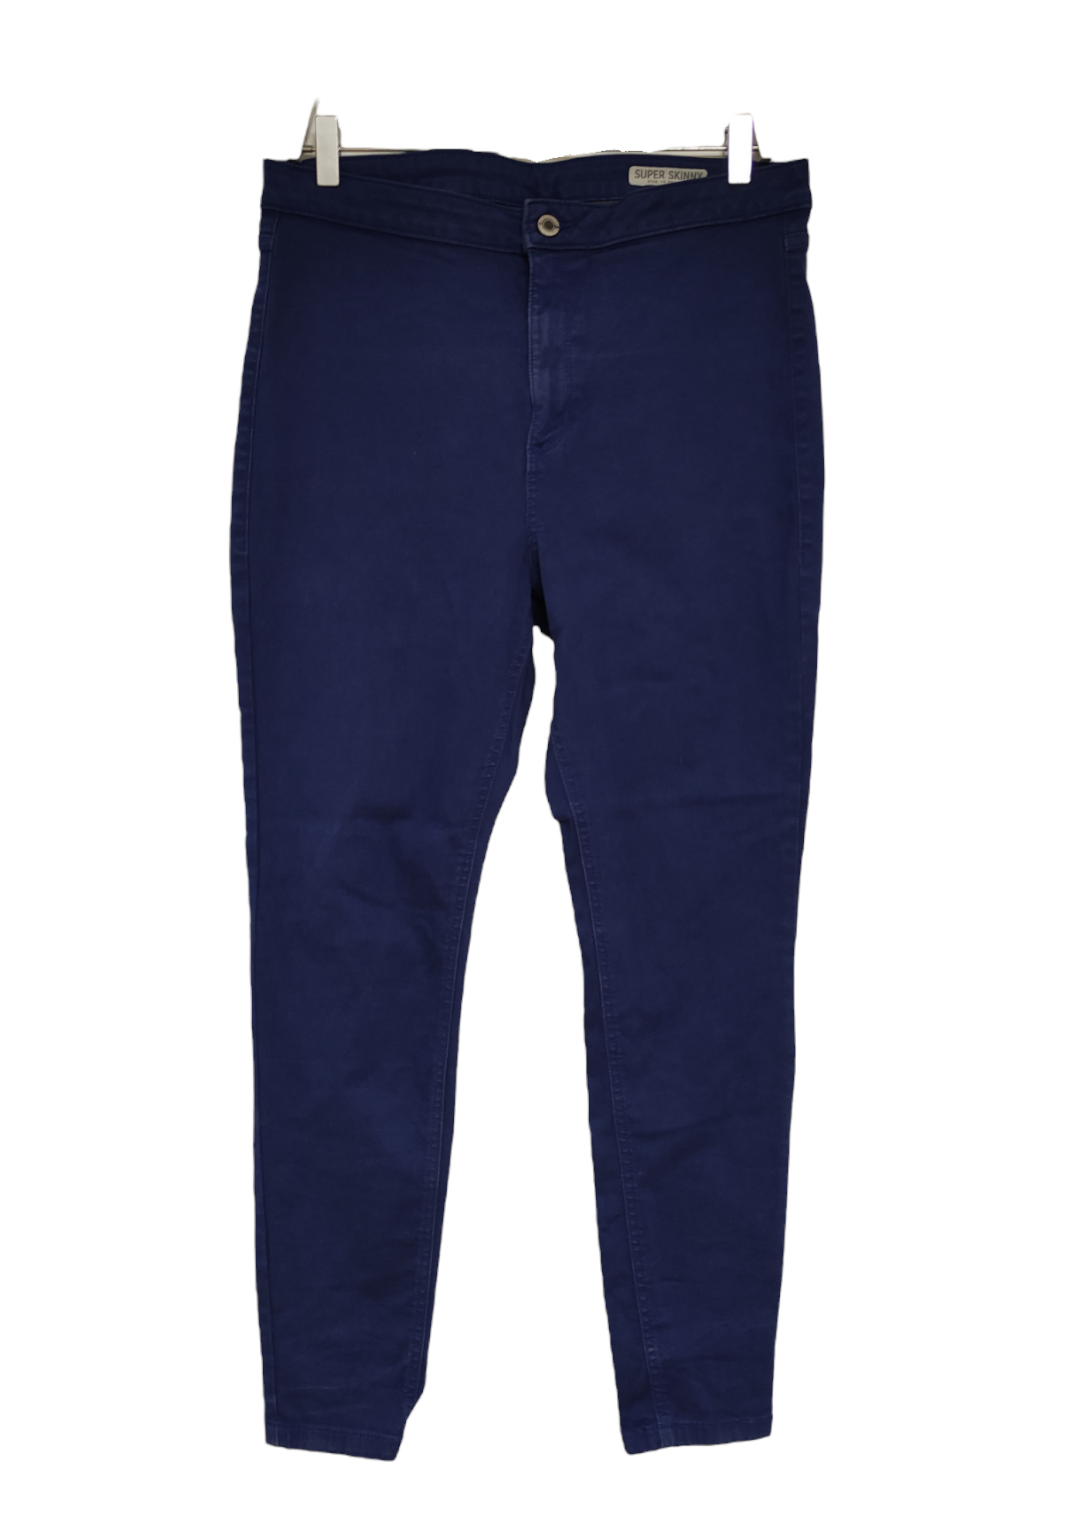 Ελαστικό, Γυναικείο Παντελόνι (Τύπου Τζιν) M&S Super Skinny σε Έντονο Μπλε Χρώμα (No 44)